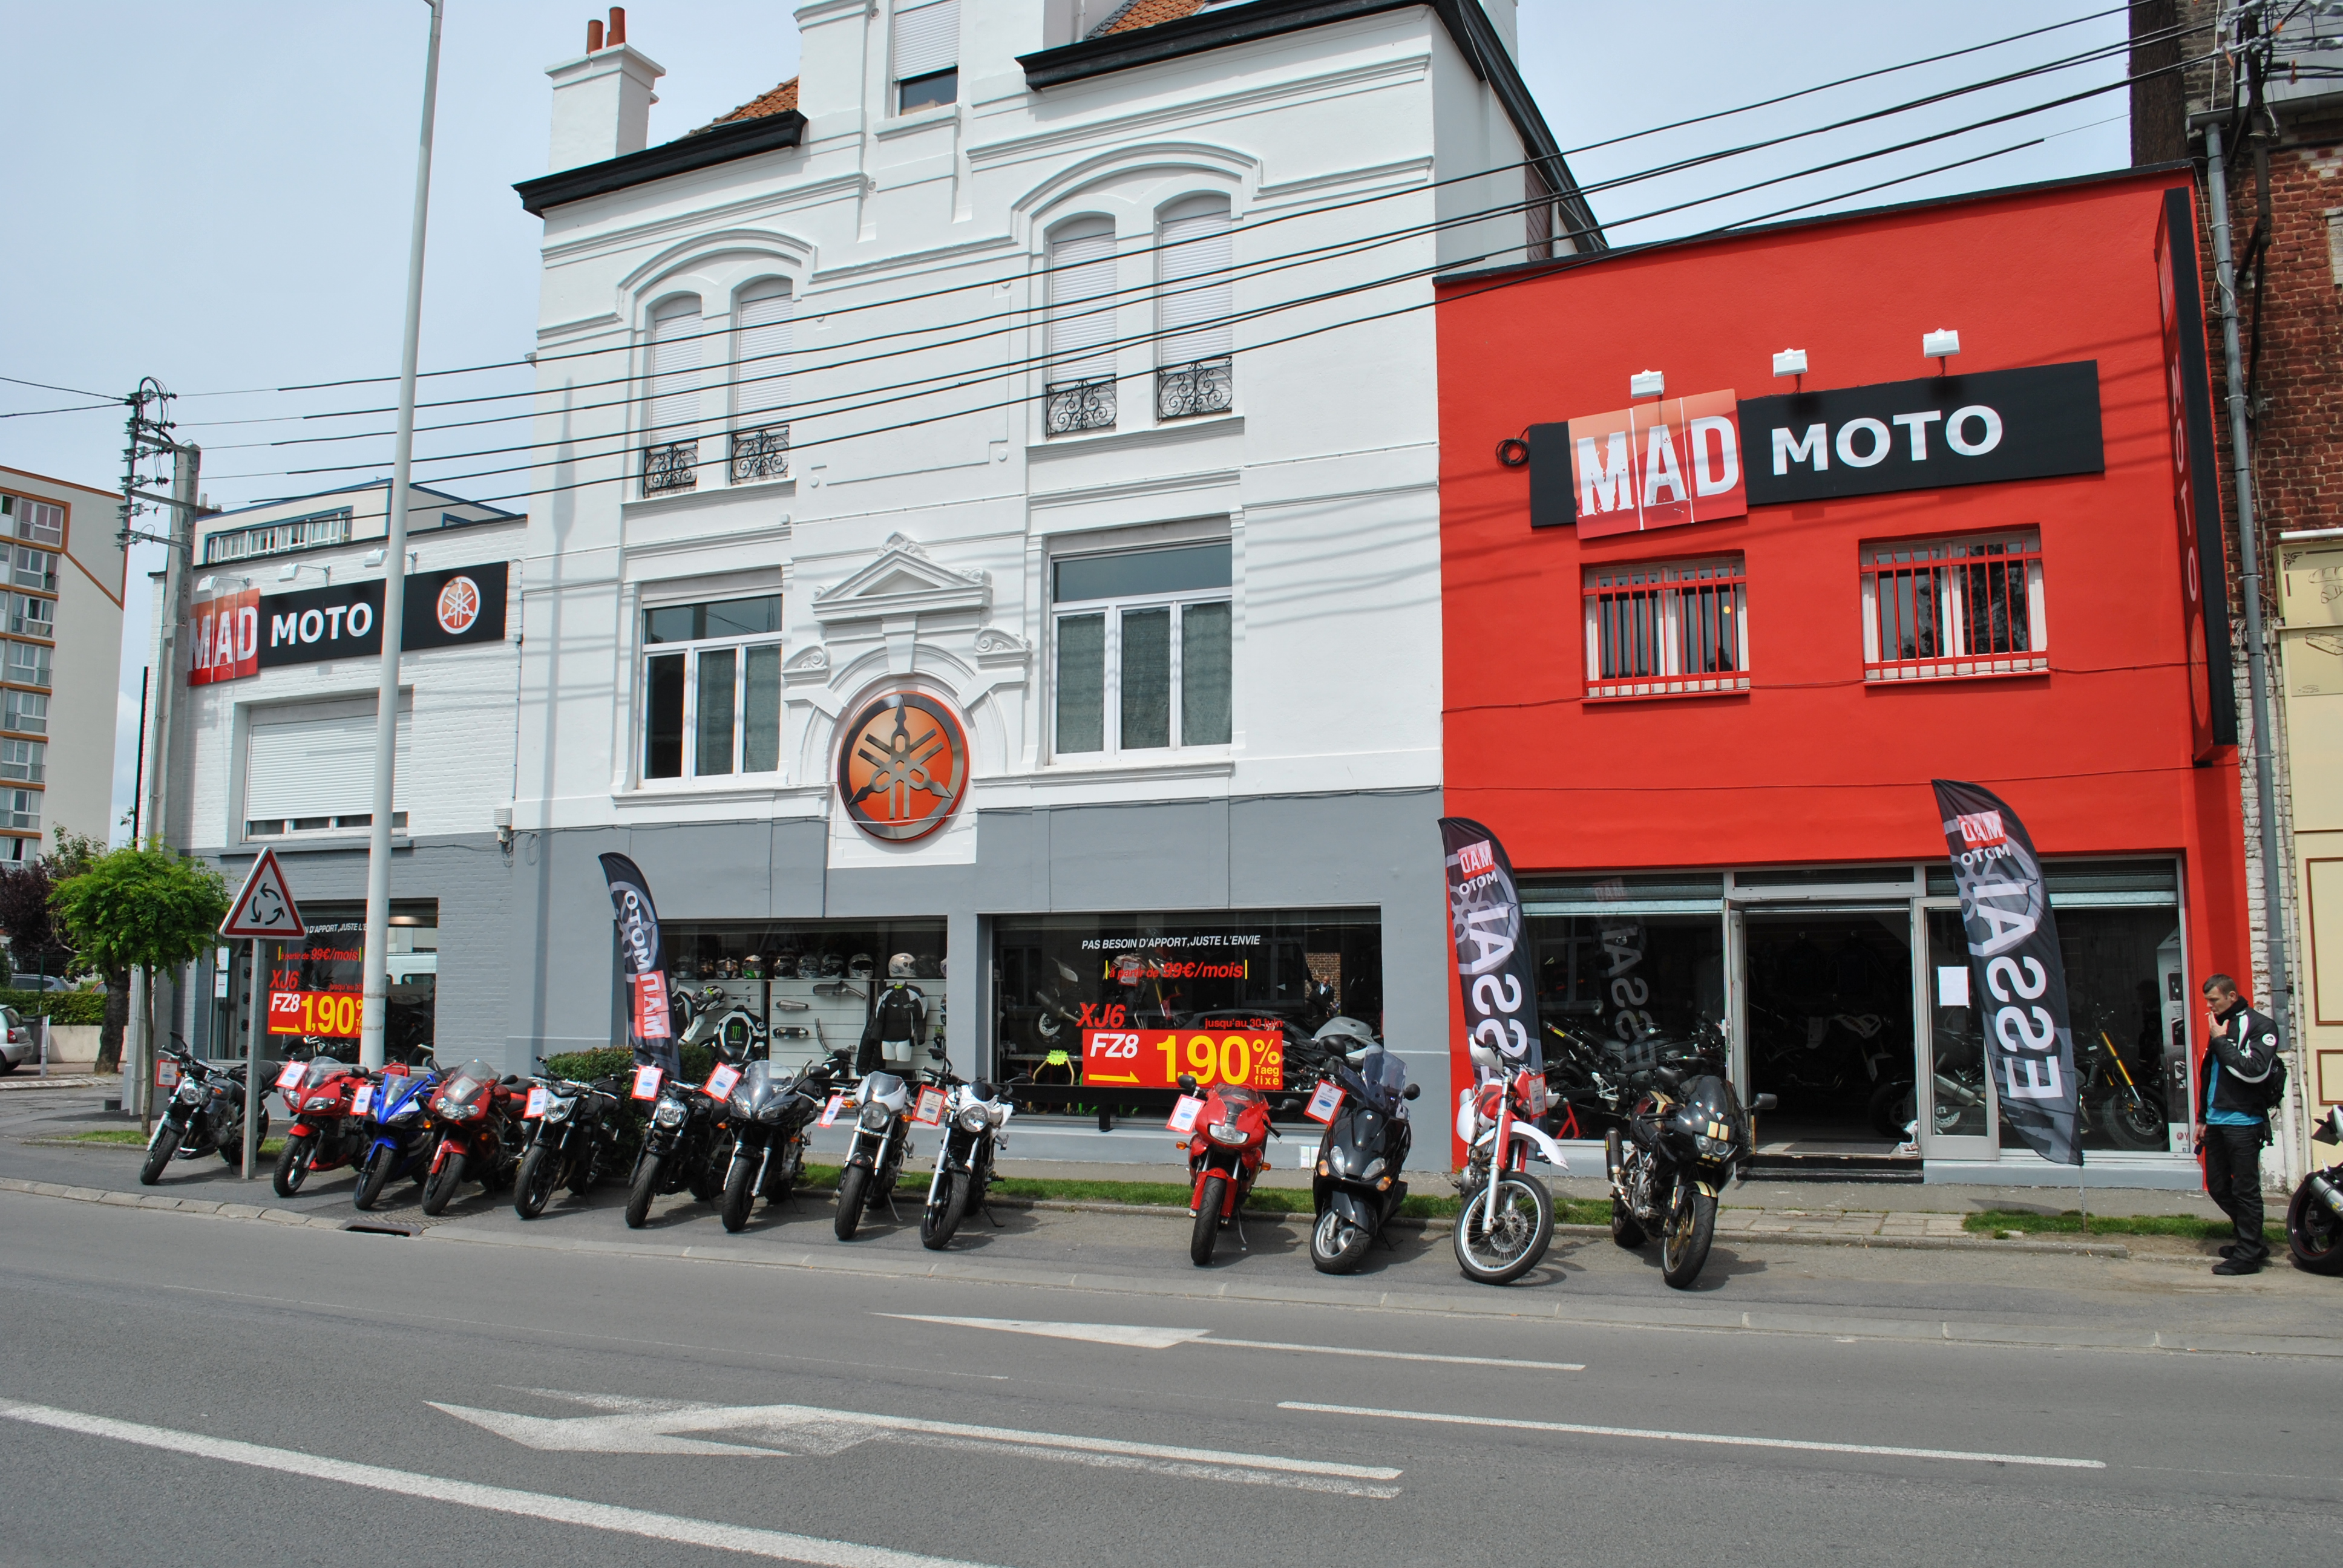 MAD MOTO - Vendeur de motos à Cambrai (59400) - Adresse et téléphone sur  l'annuaire Hoodspot